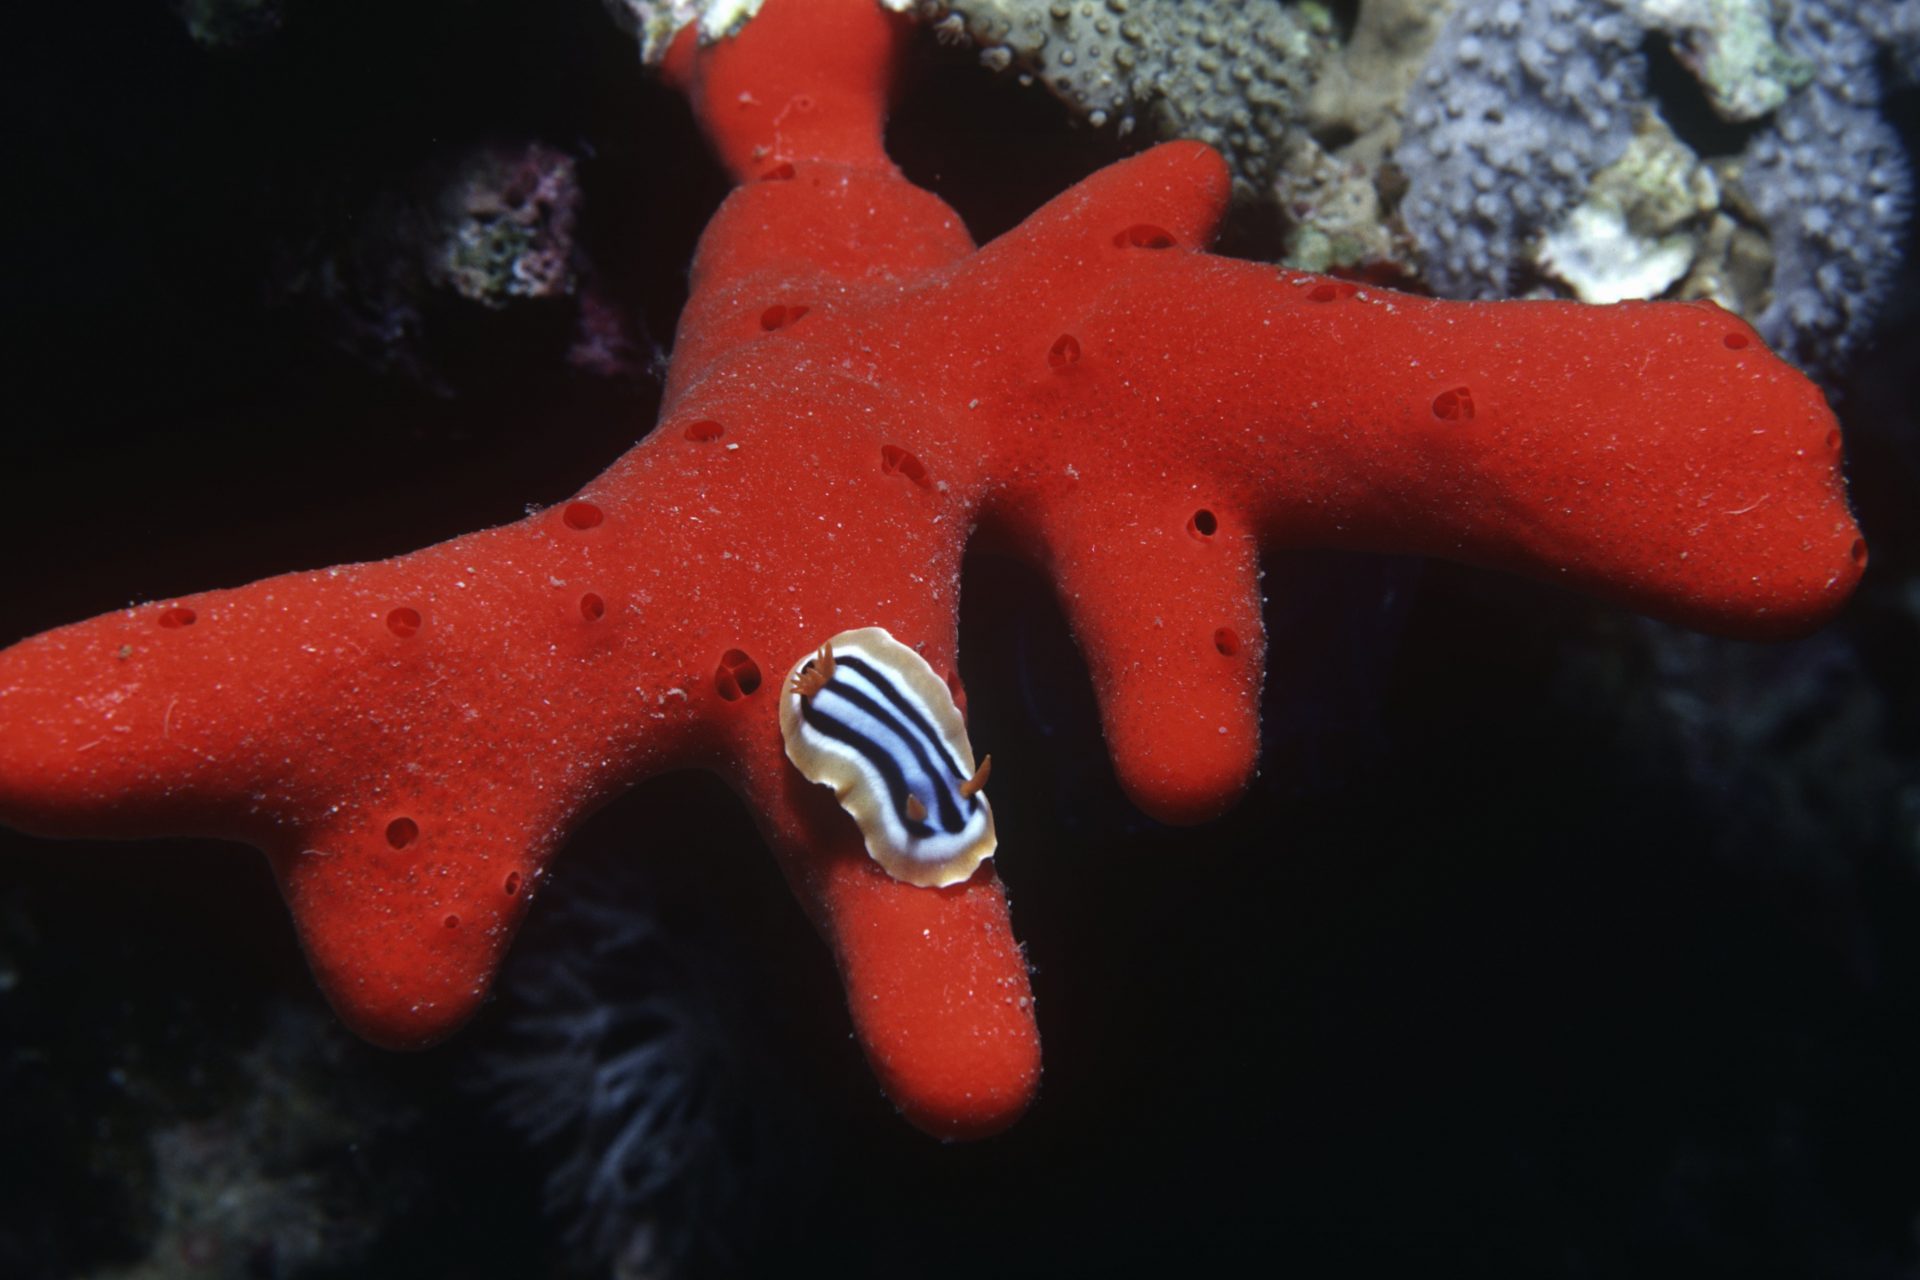 Sea slug standing on a sponge